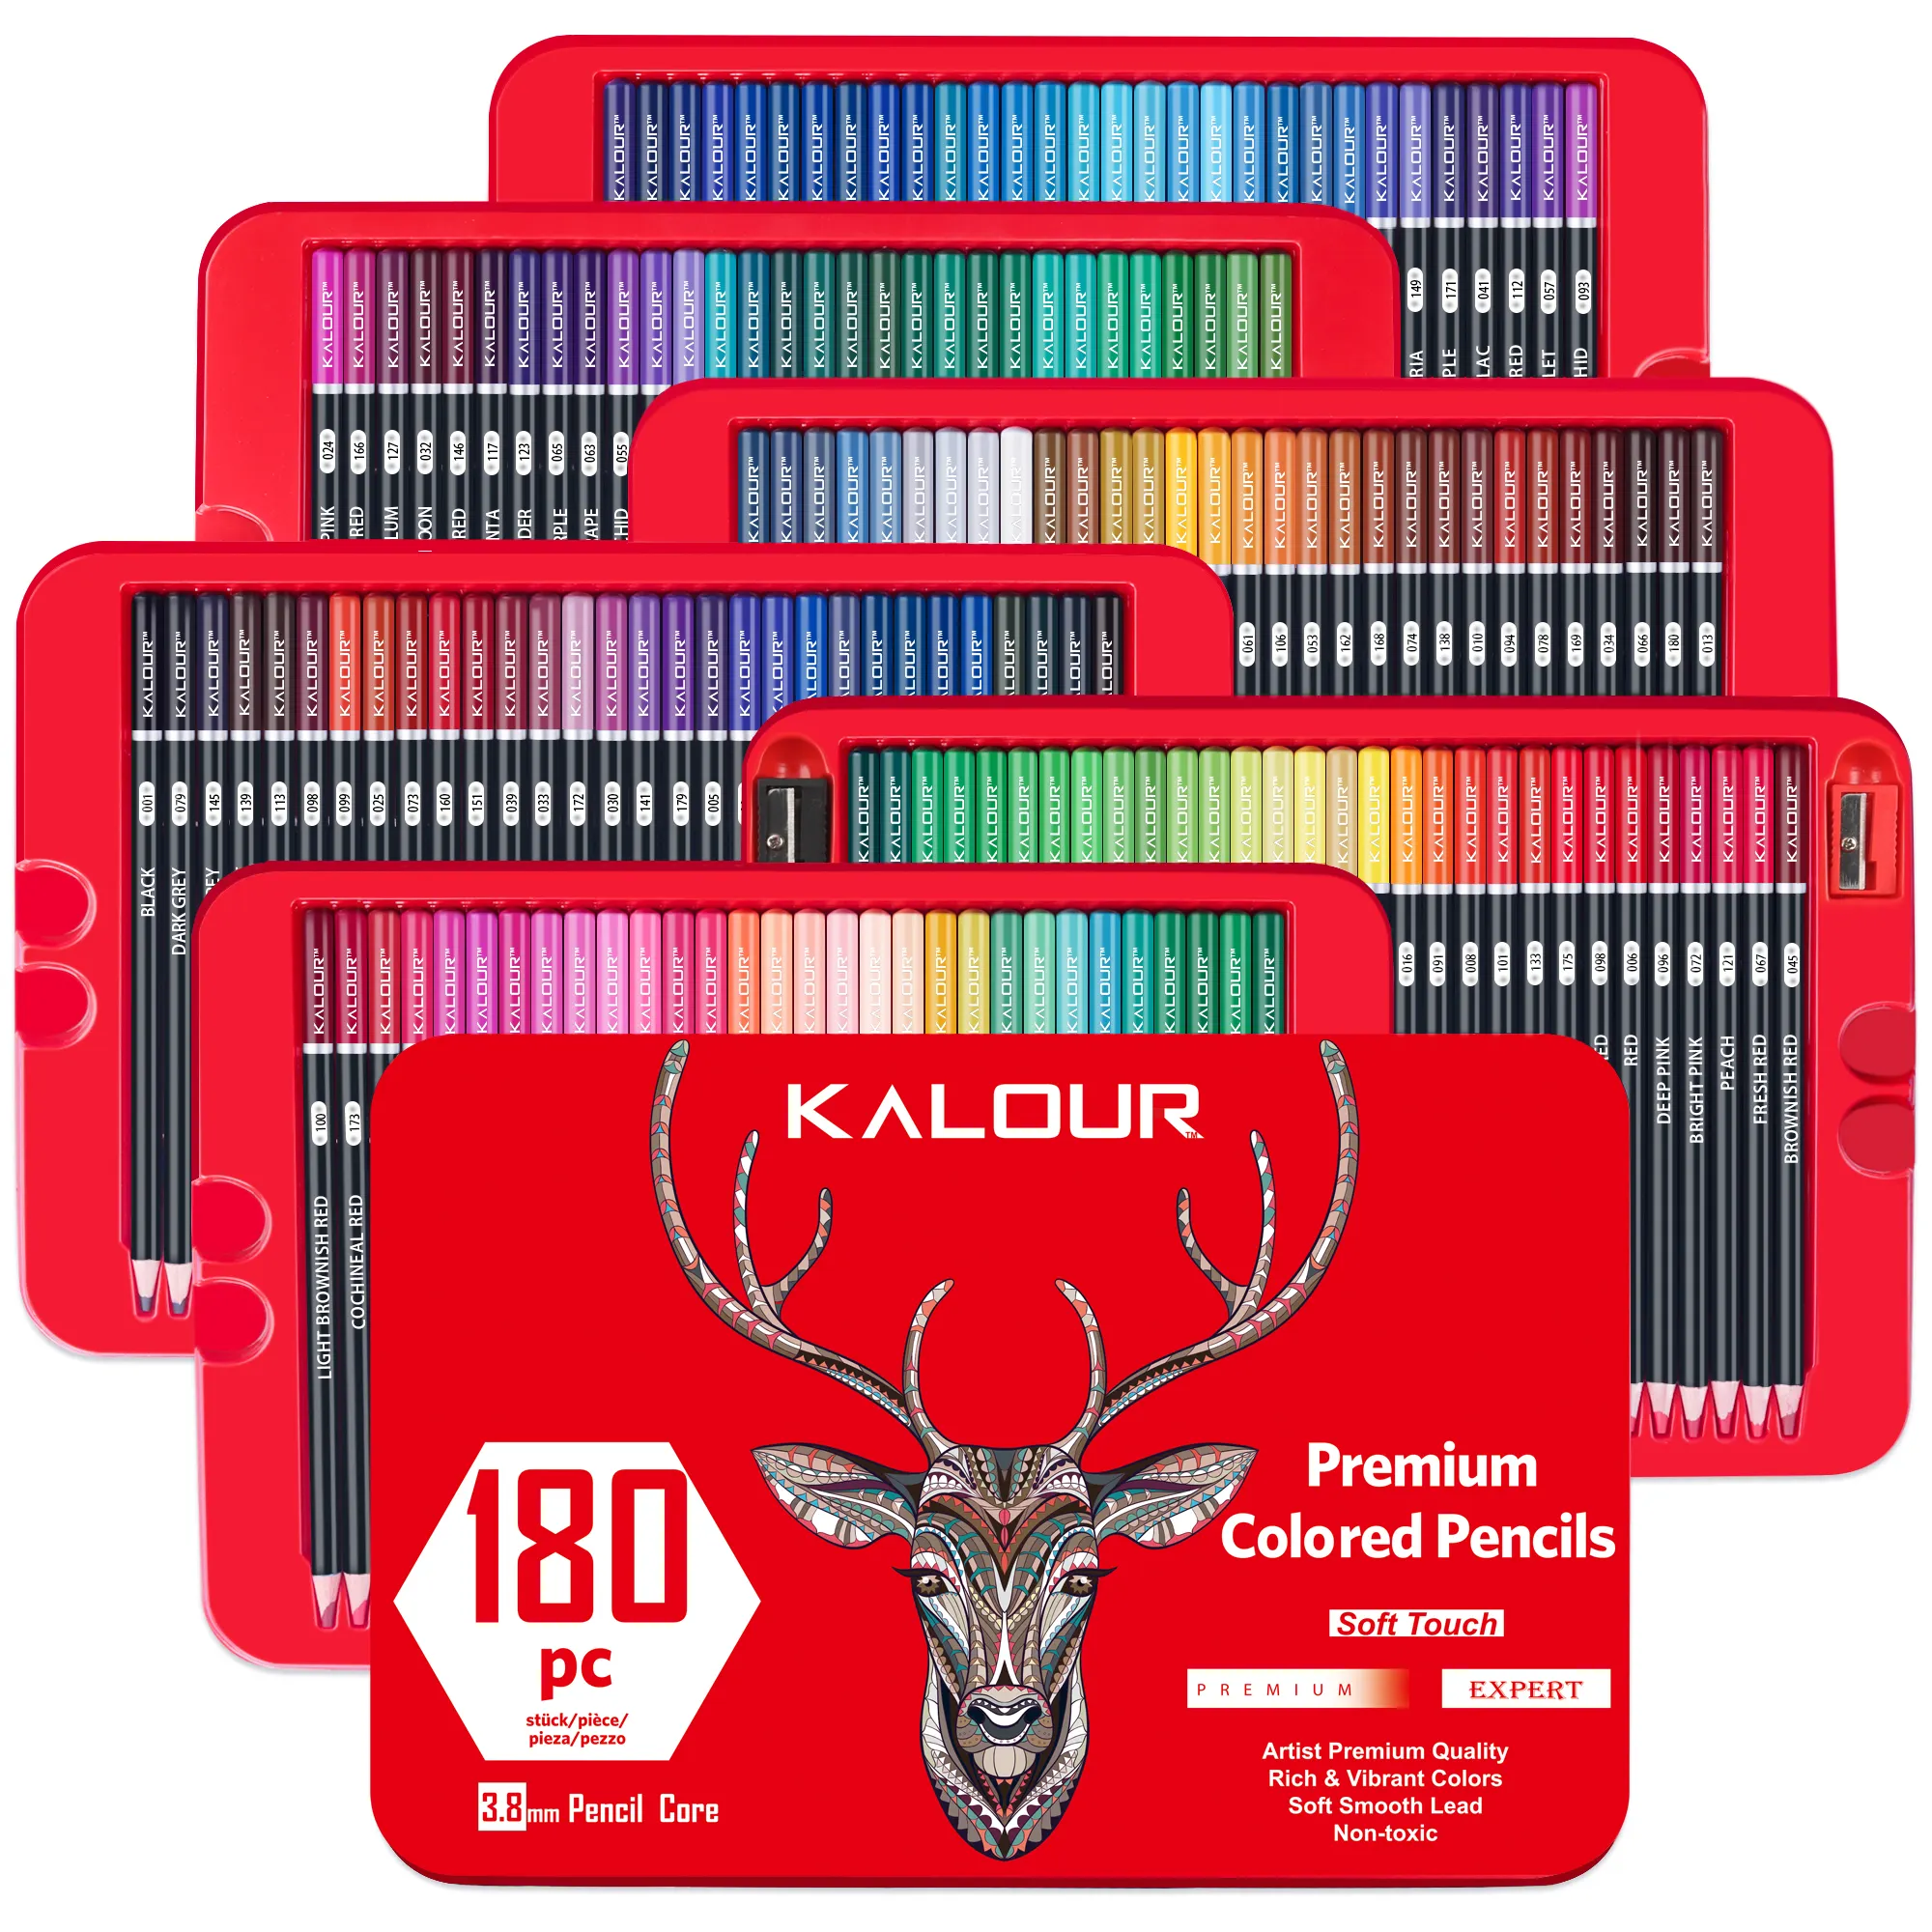 KALOUR Set pensil warna 3.8mm, berbahan minyak Premium inti lembut 180 warna dalam kotak timah